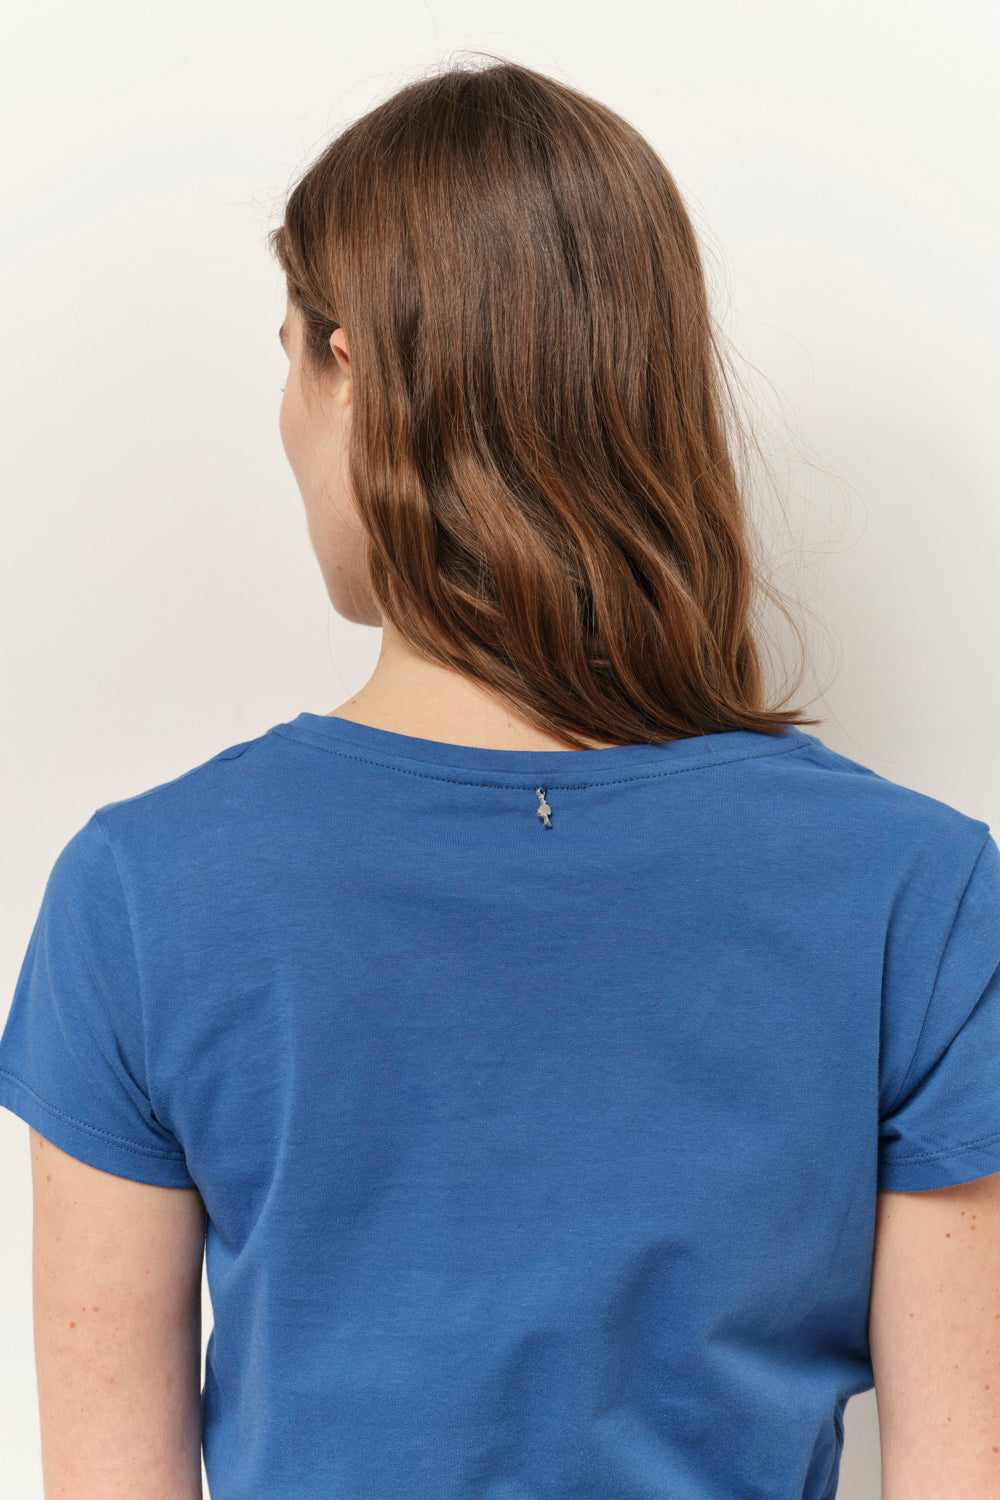 MICA - T-shirt santorin blue coton bio message motif léopard métallisé